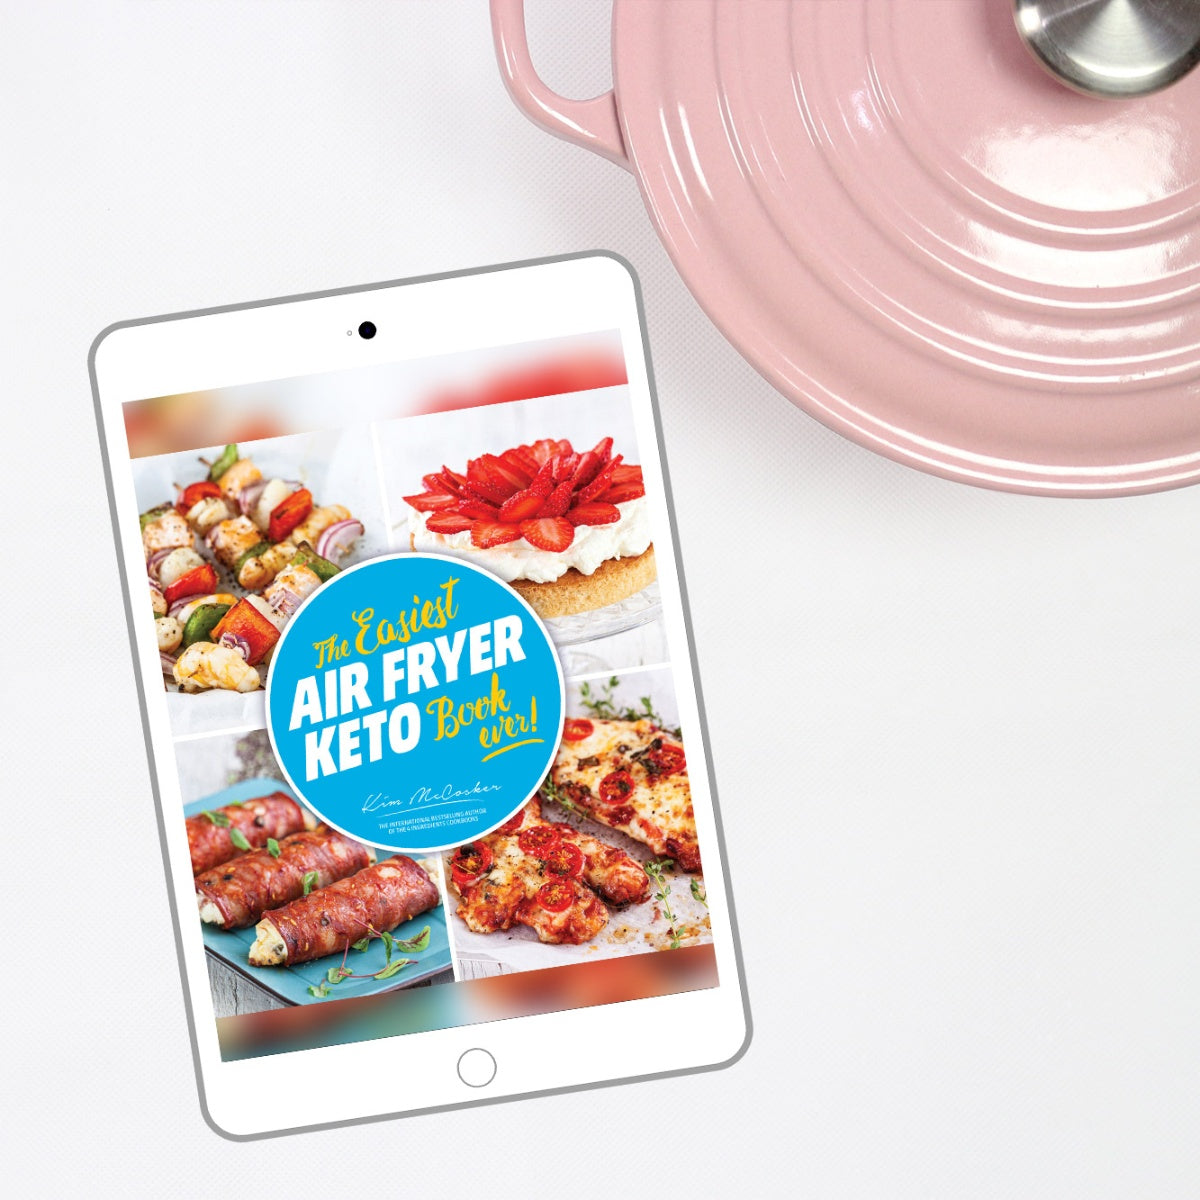 The Easiest Air Fryer Keto Book ever! (Digital eBook)